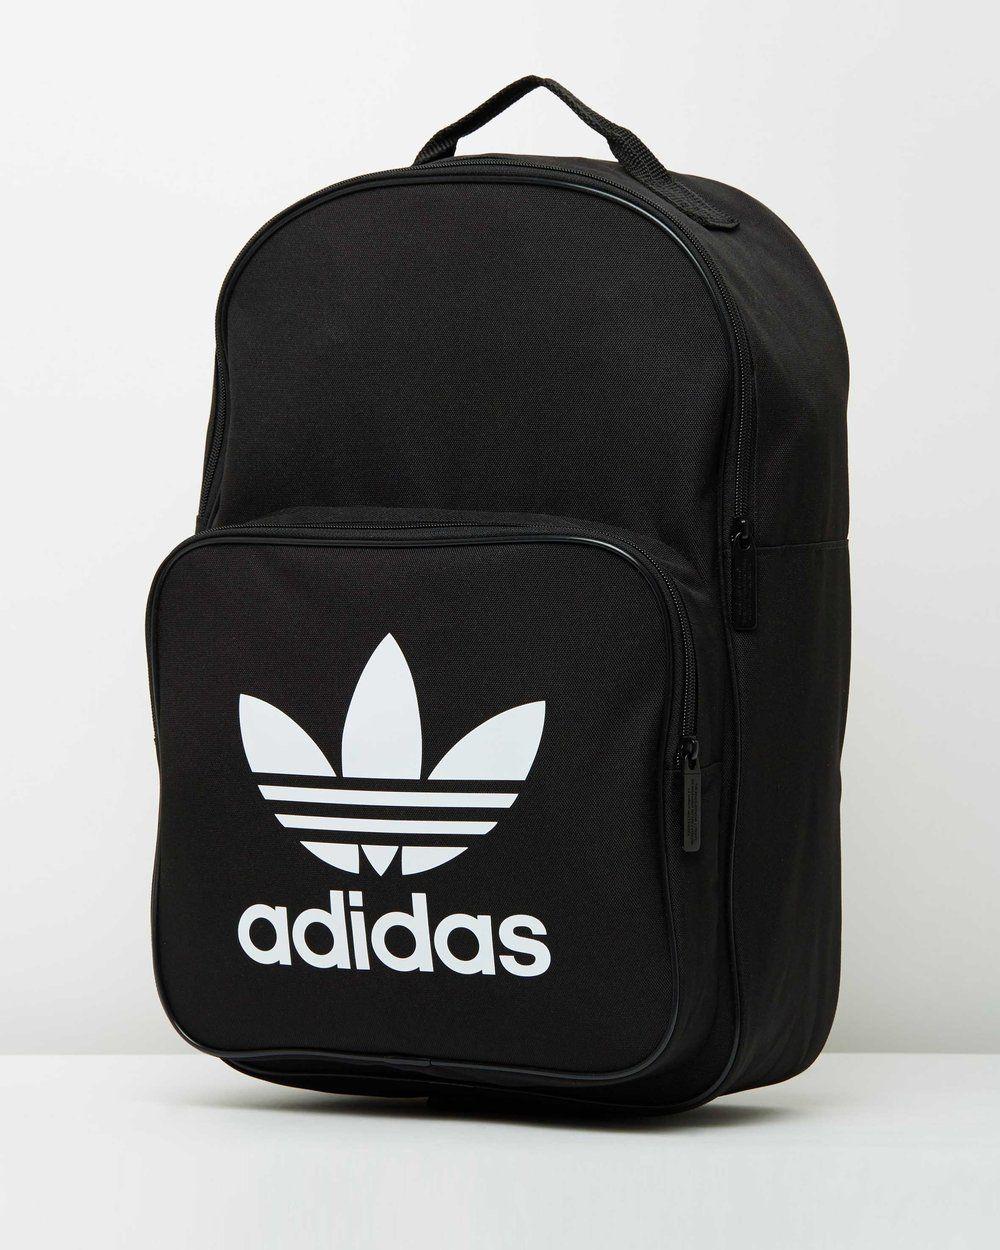 Australian Backpack Logo - ADIDAS TREFOIL BACKPACK CLASSIC BAG BLACK AUSTRALIAN SELLER